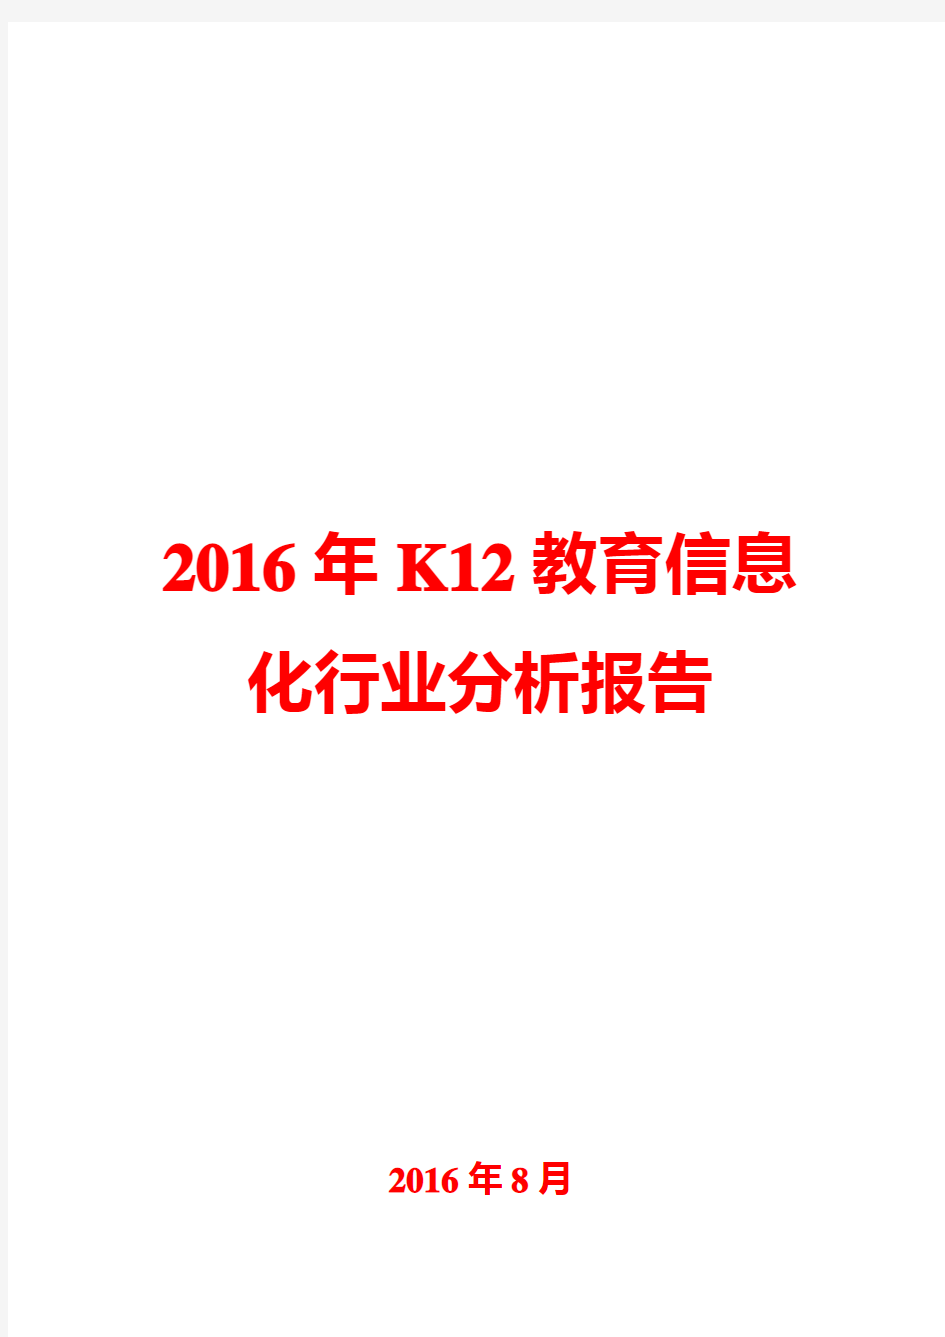 2016年K12教育信息化行业分析报告